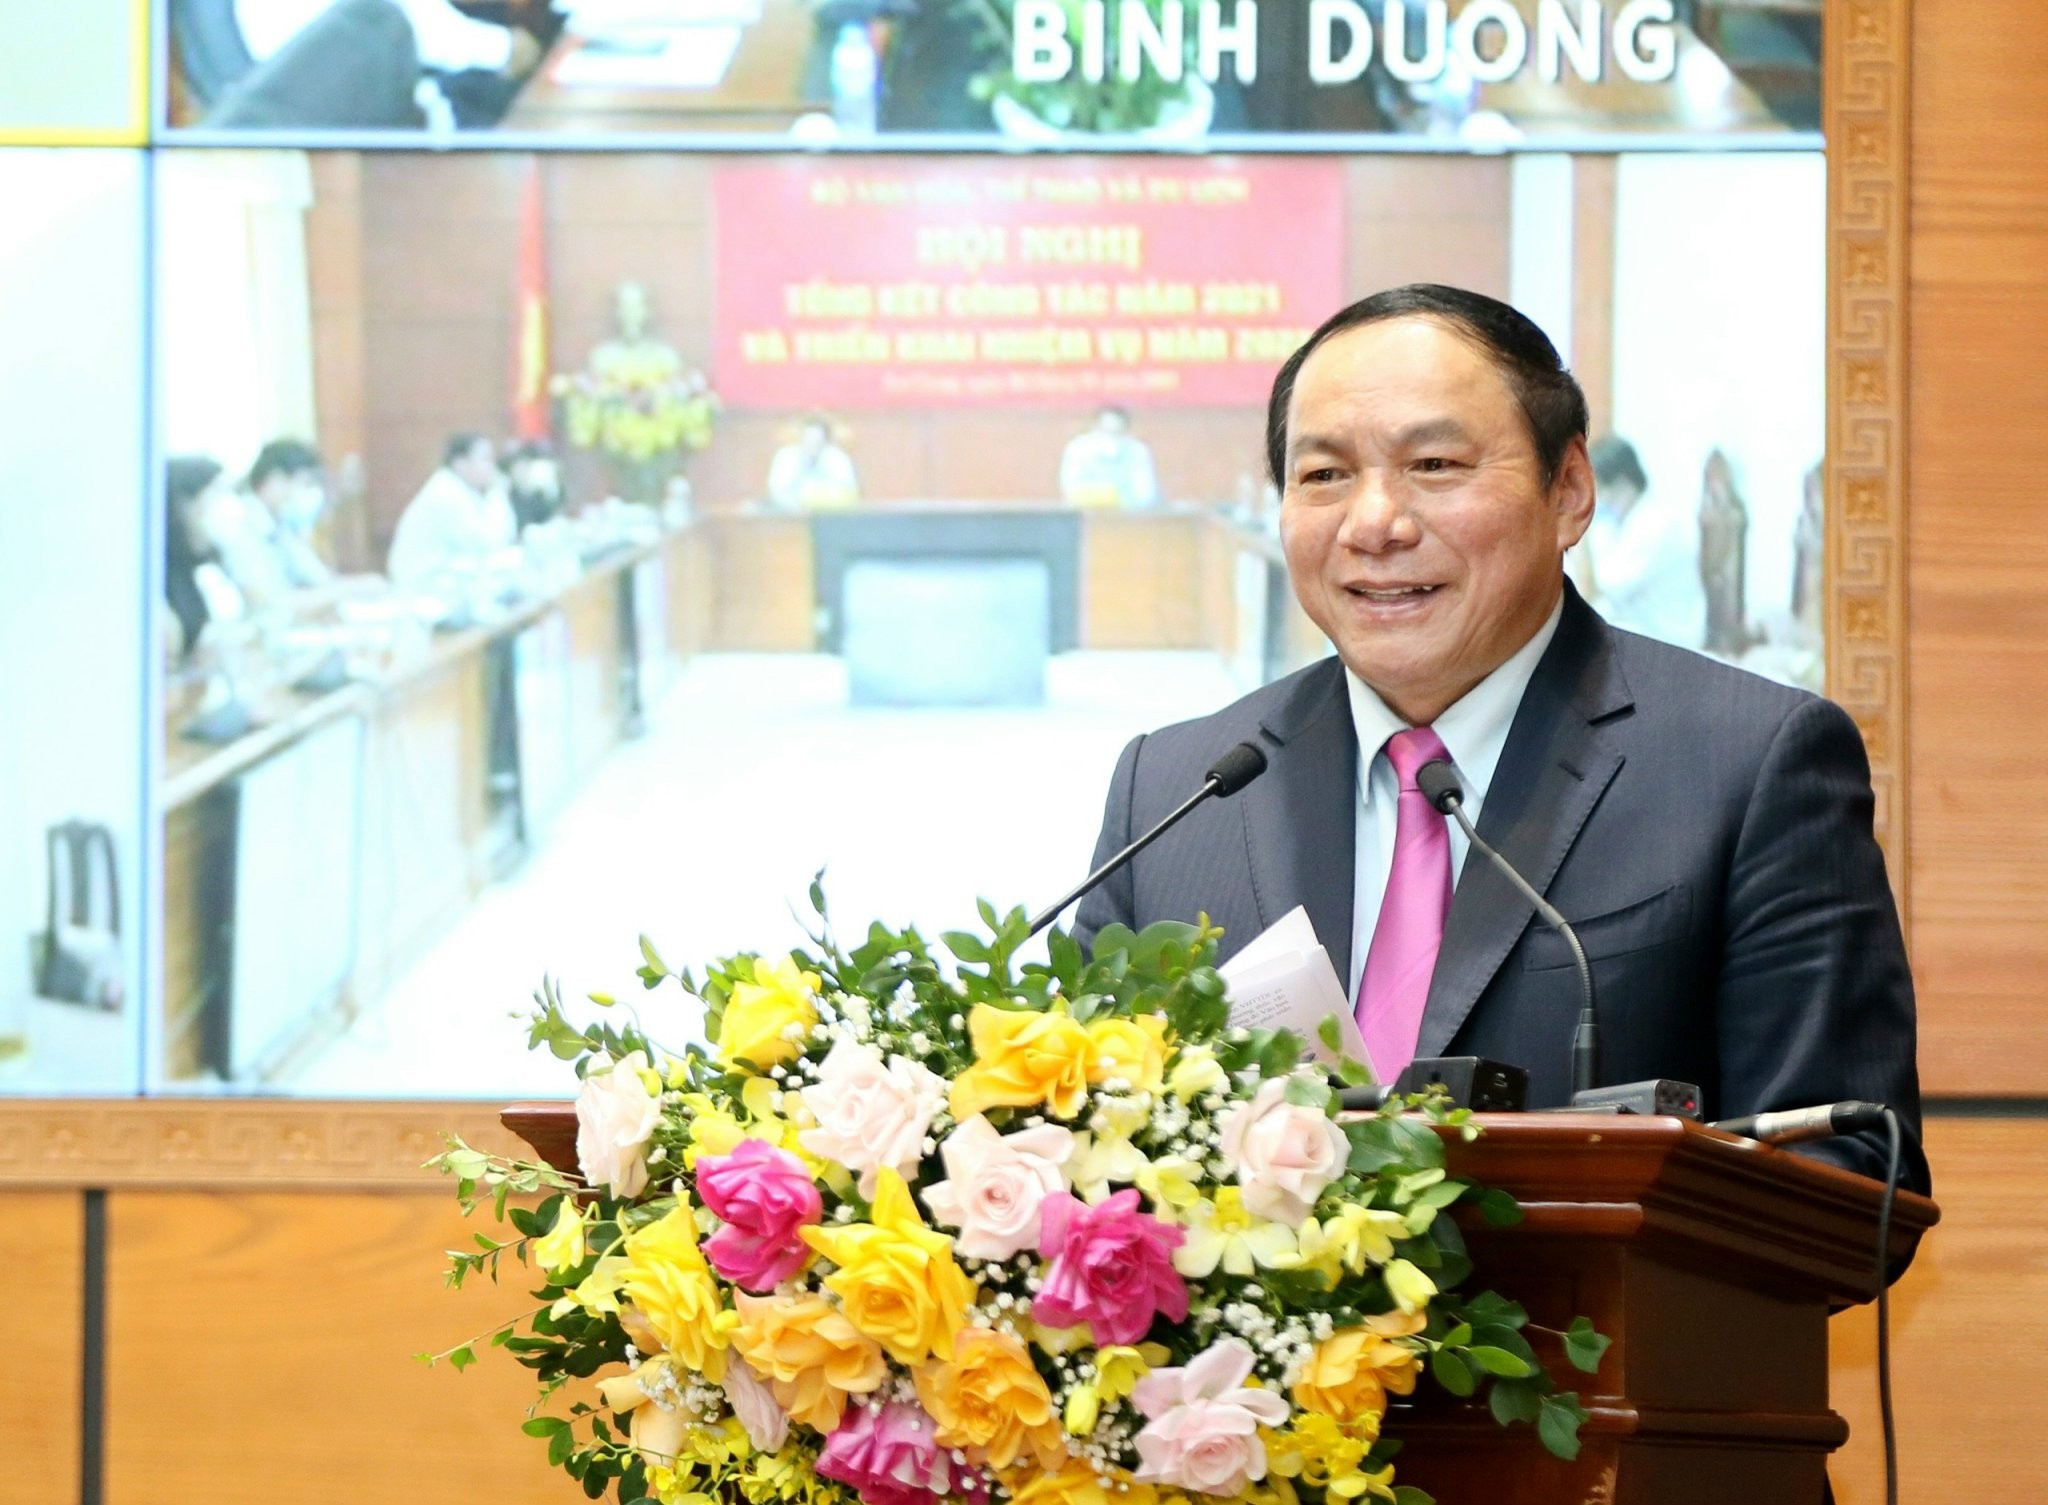 Uỷ viên Trung ương Đảng - Bộ trưởng Bộ Văn hóa, Thể thao và Du lịch Nguyễn Văn Hùng: “Quyết liệt hành động, khát vọng cống hiến”